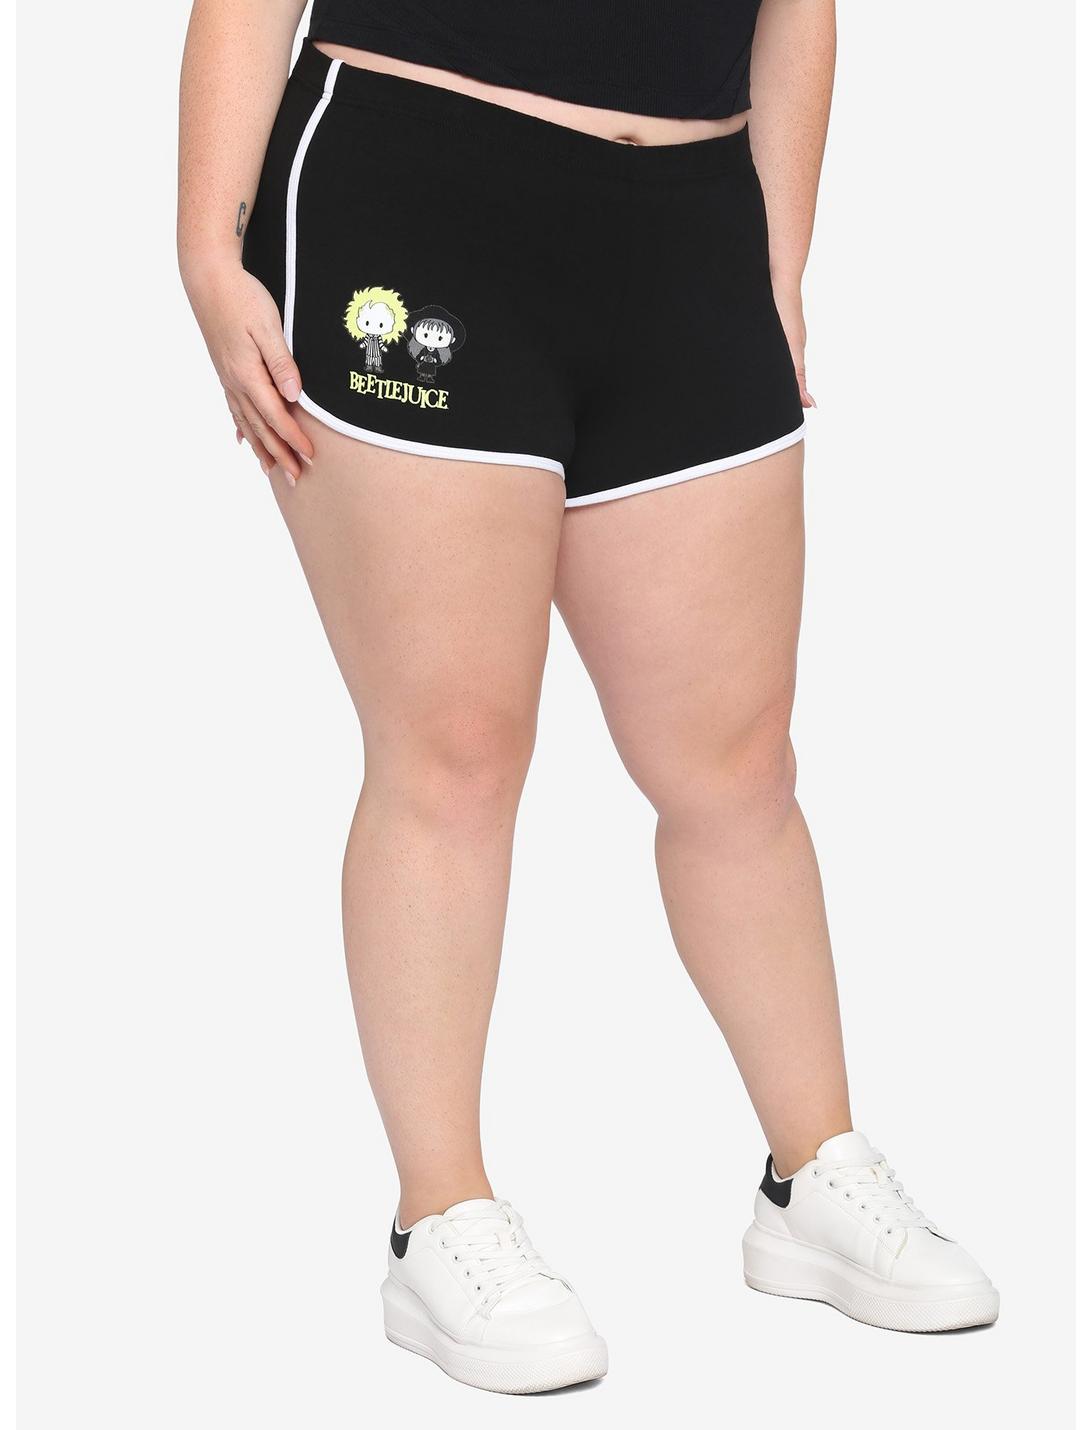 Beetlejuice Chibi Plus Sized Soft Shorts